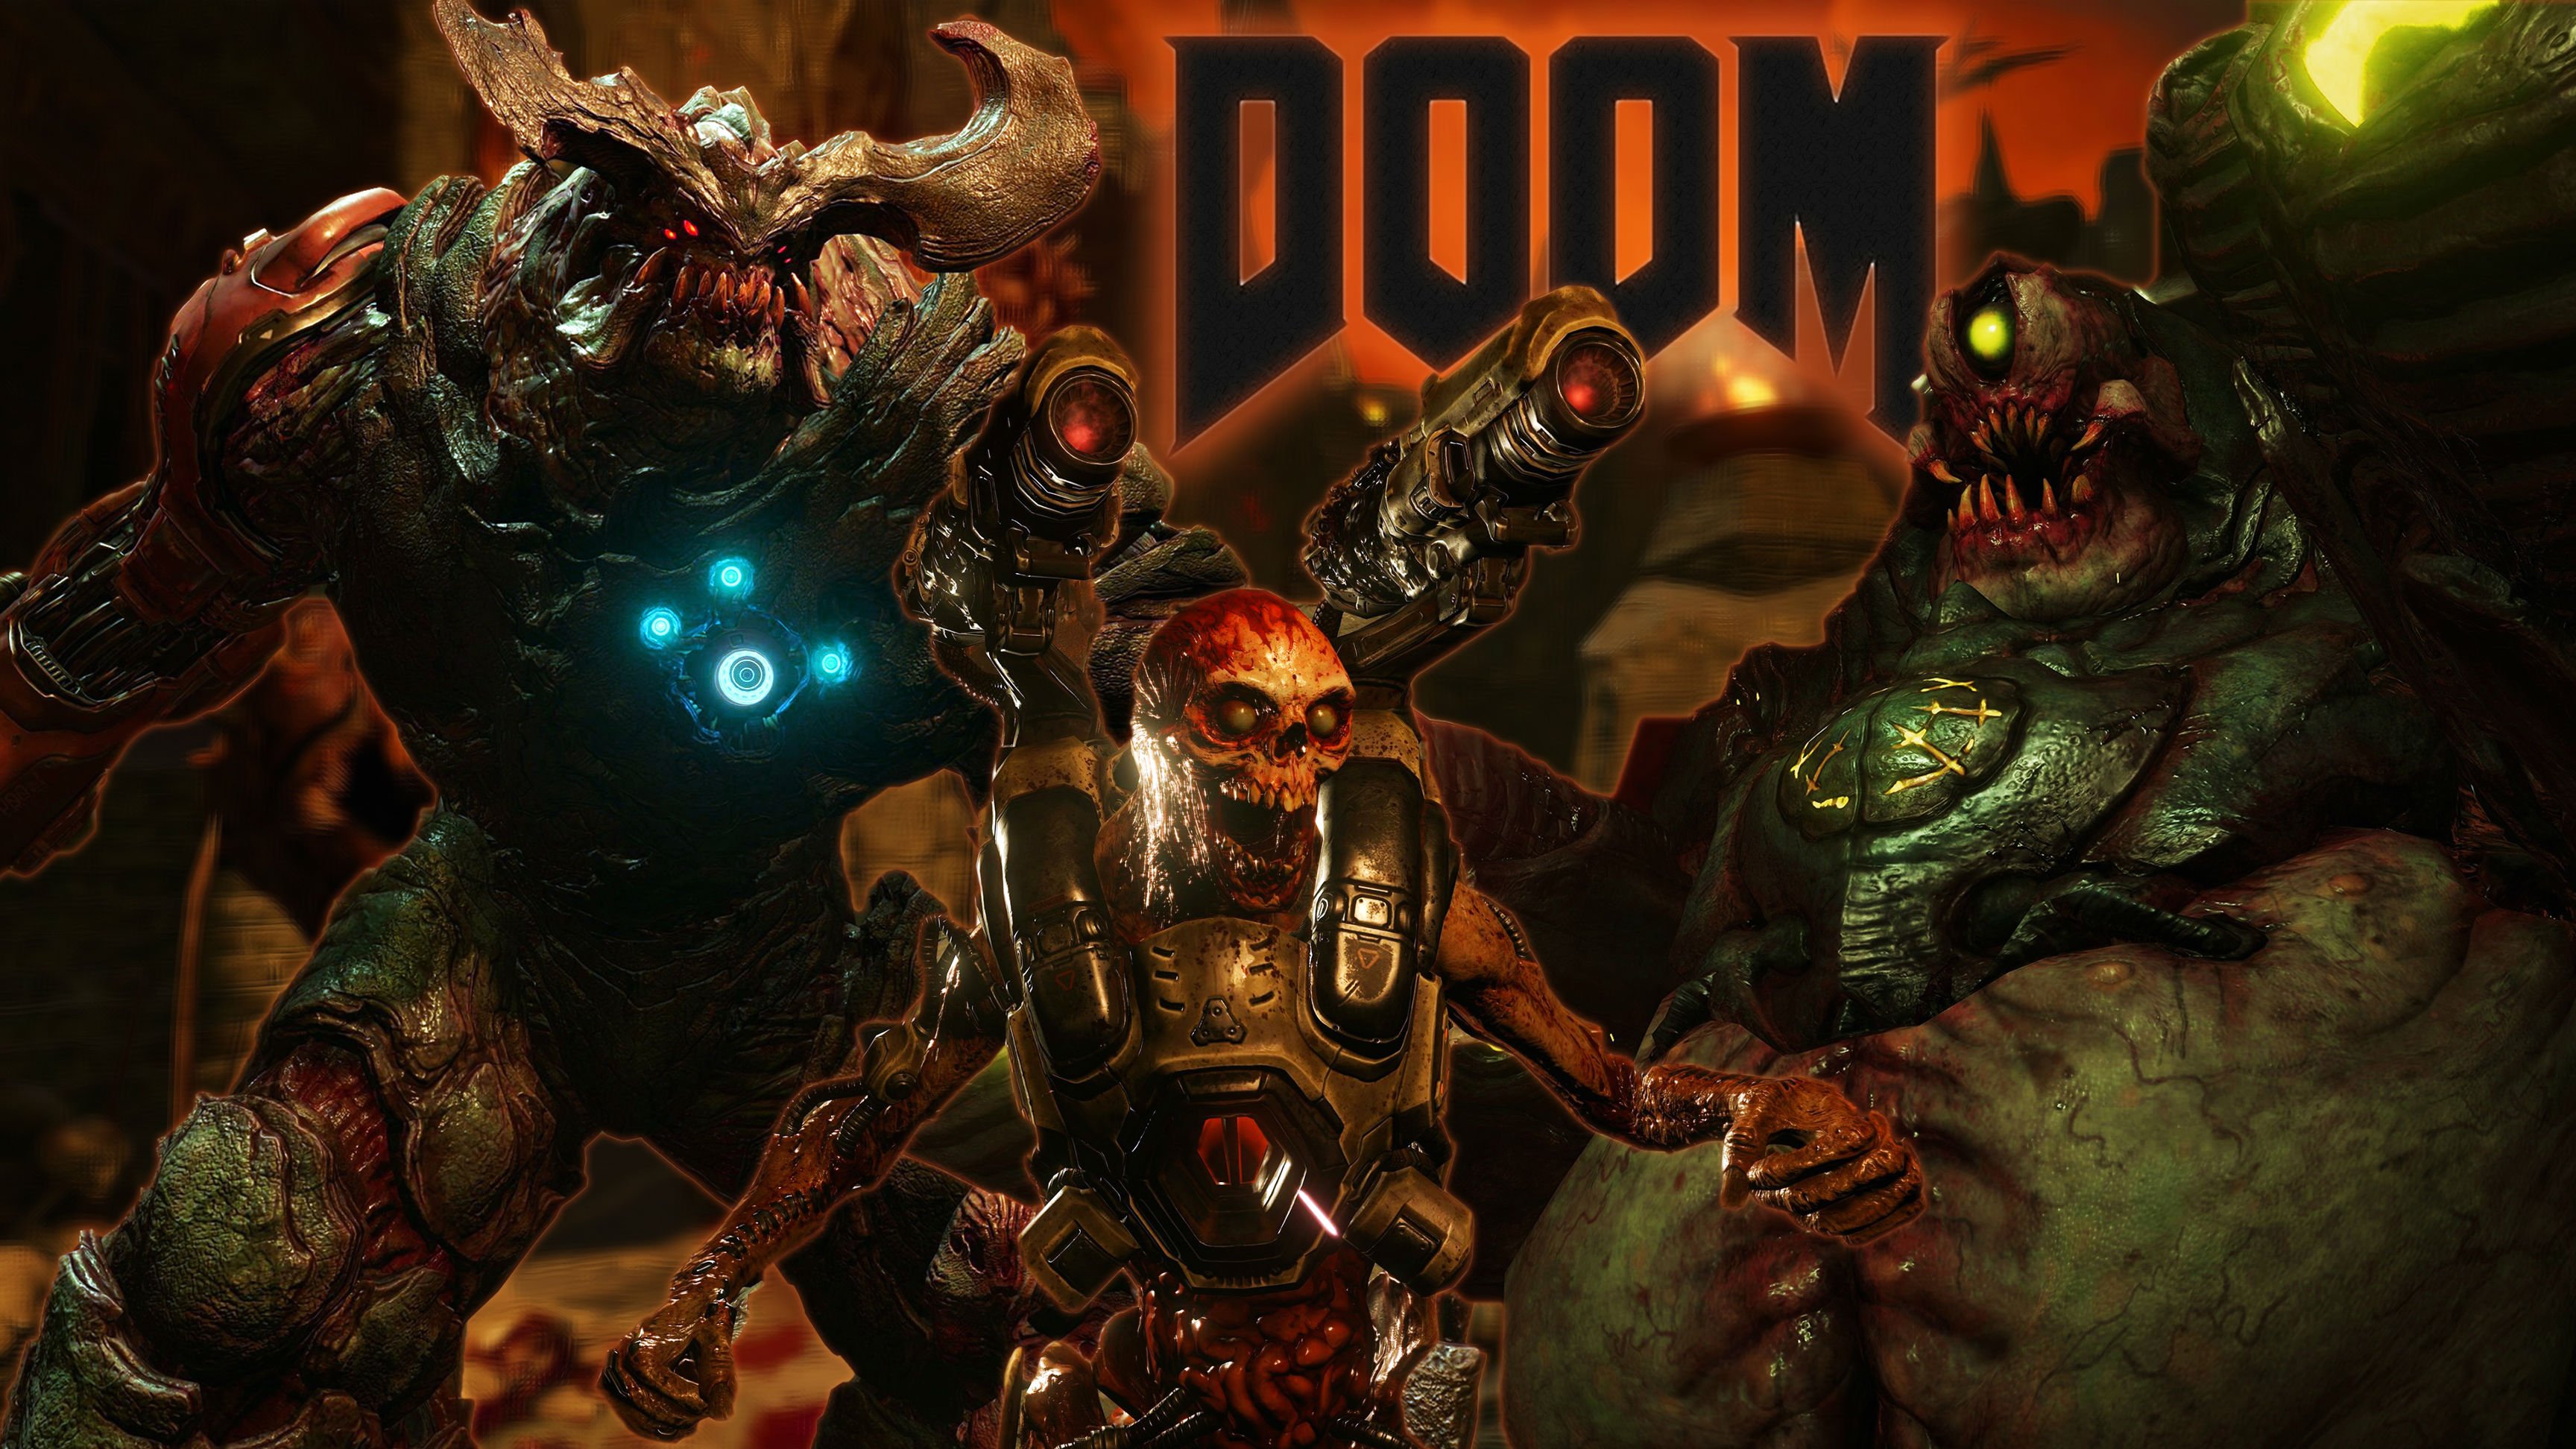  sci fi futuristic warrior poster skull zombie wallpaper background